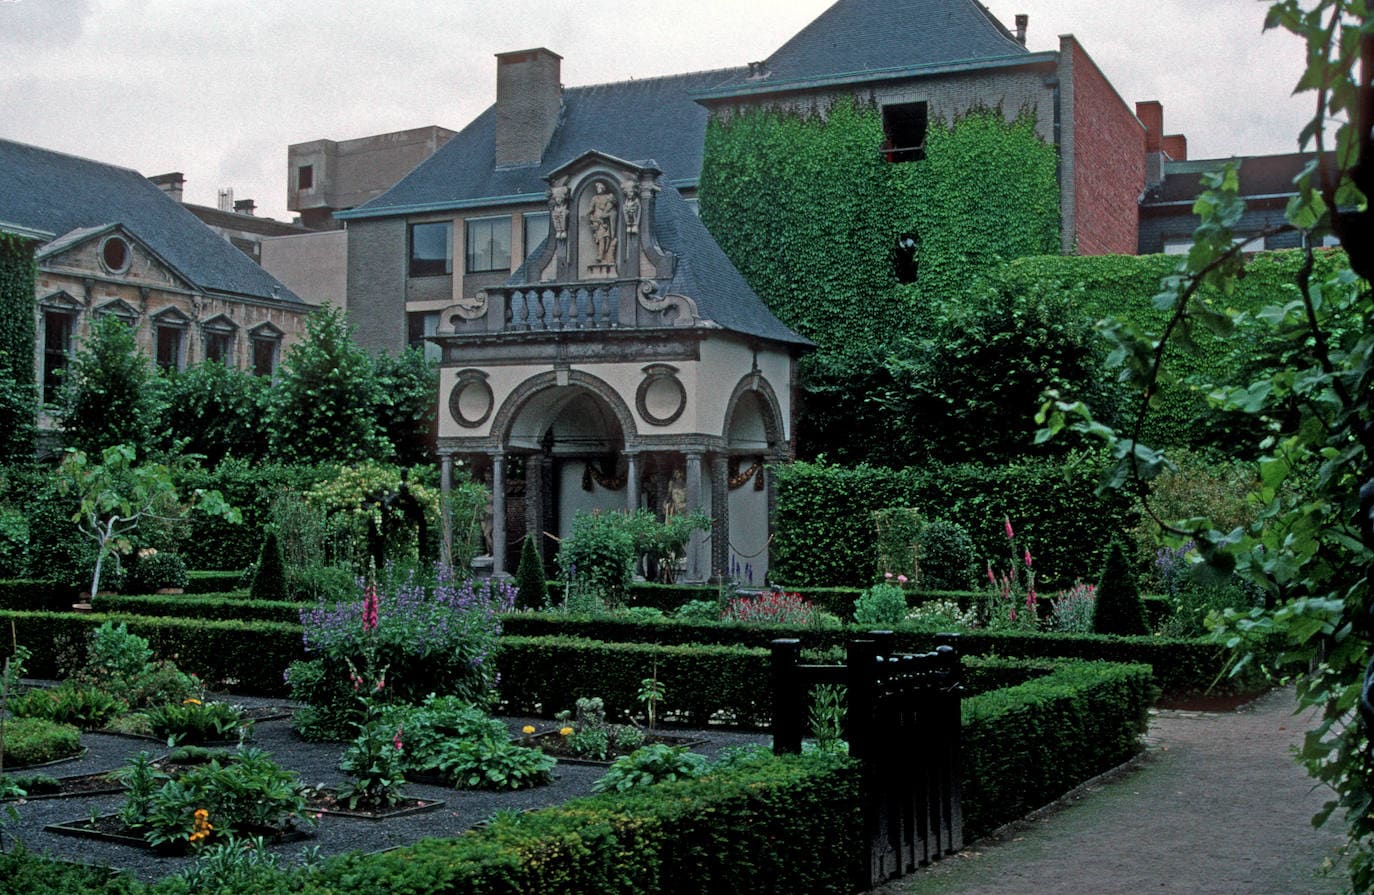 8.- Rubens (Amberes) | La Rubenshuis o Casa de Rubens es una de las visitas obligadas cuando se hace turismo en Amberes. La mansión fue adquirida por el pintor y la utilizó durante años como casa y taller. Cuenta con dos pisos y con un frondoso y agradable patio.